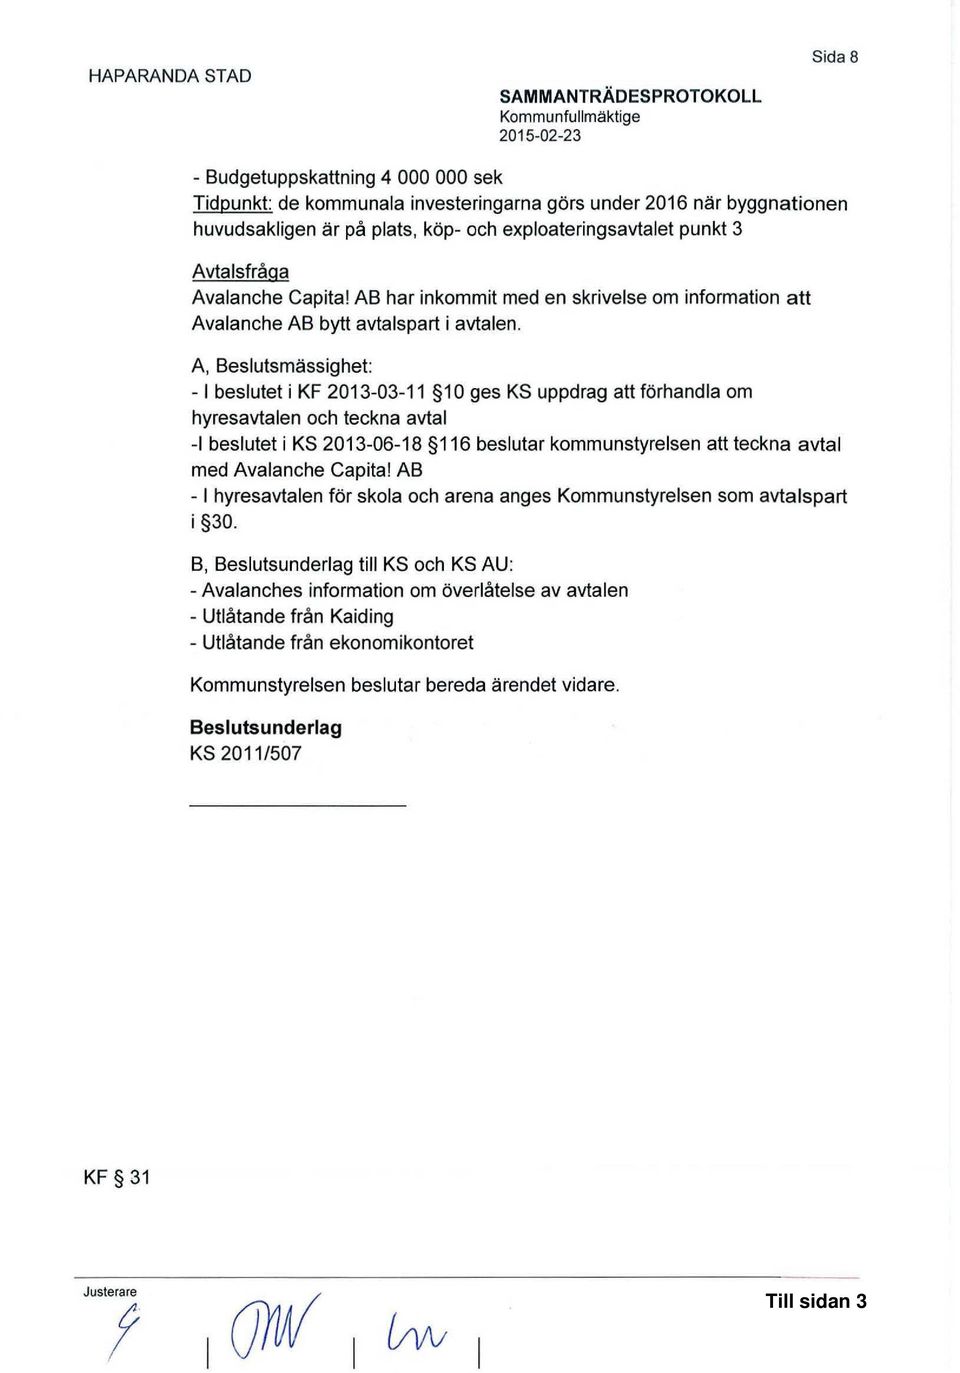 A, Beslutsmässighet: - l beslutet i KF 2013-03-11 1 O ges KS uppdrag att förhandla om hyresavtalen och teckna avtal -1 beslutet i KS 2013-06-18 116 beslutar kommunstyrelsen att teckna avtal med